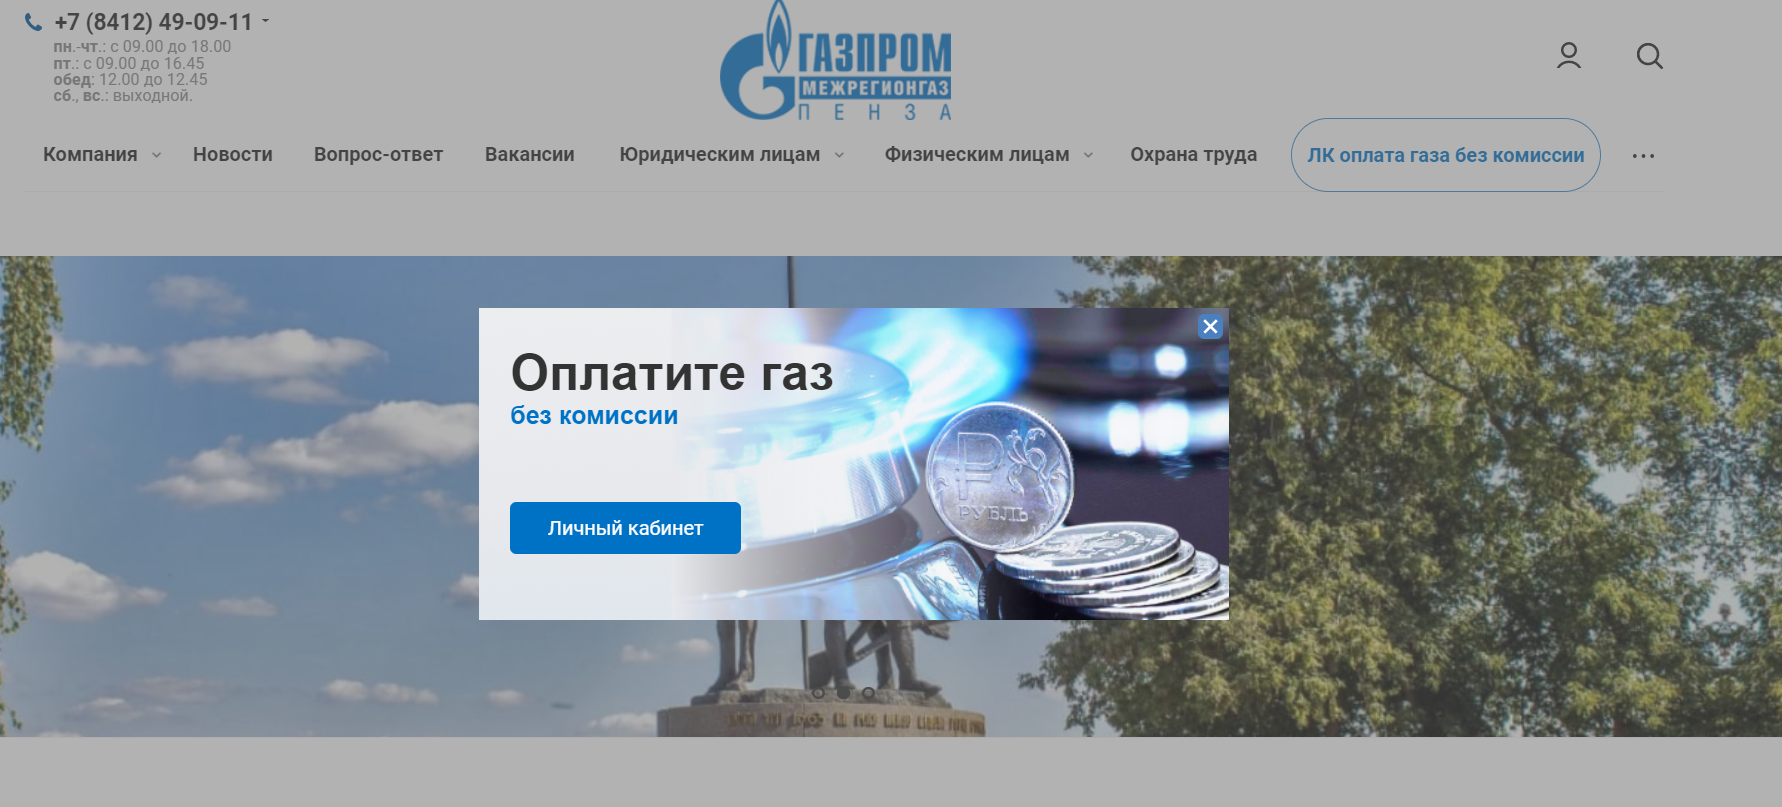 В «Газпром межрегионгаз Пенза» пояснили, куда обращаться абонентам в случае возникновения спорных ситуаций